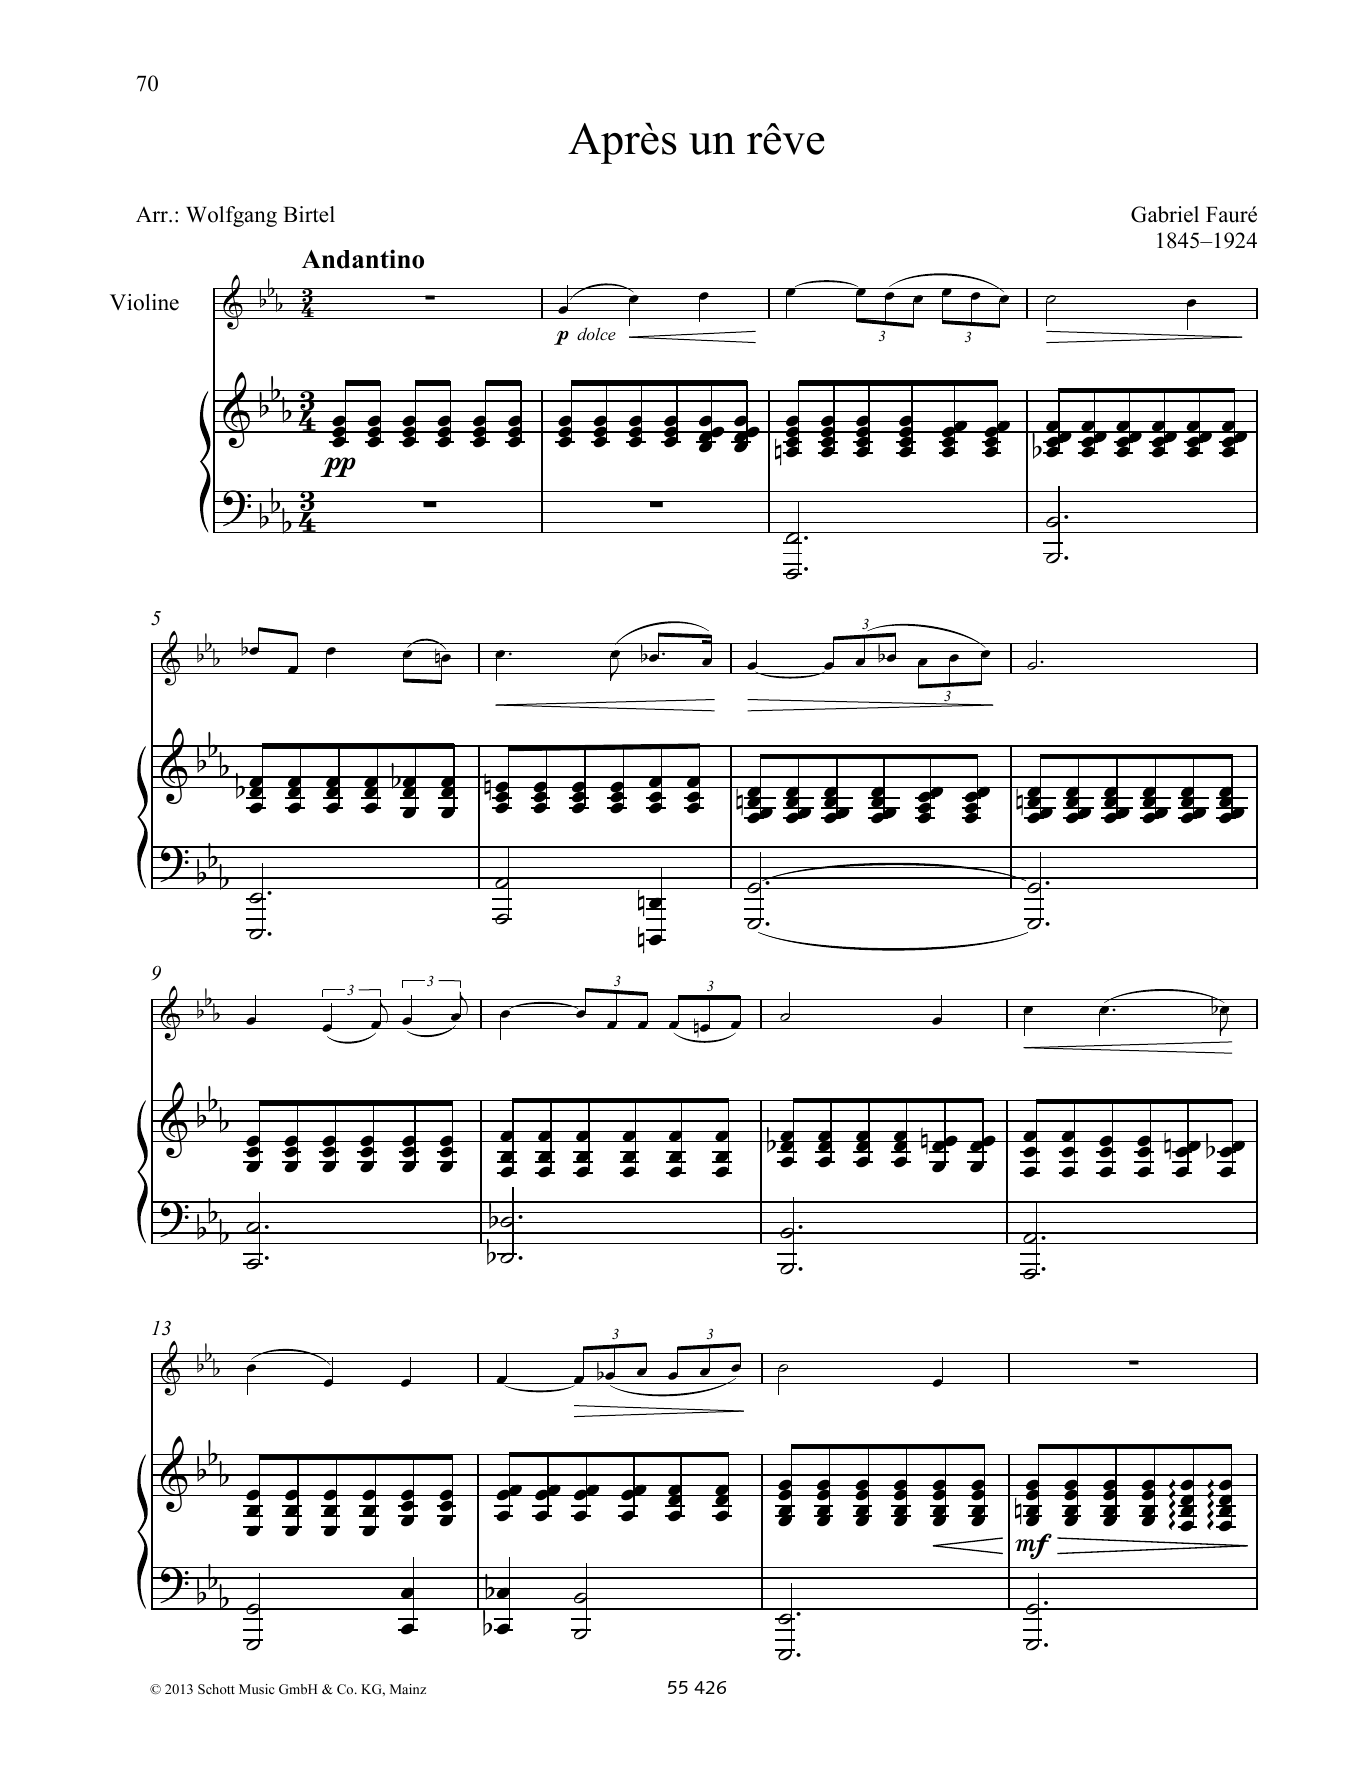 Gabriel Fauré Après un rêve Sheet Music Notes & Chords for Brass Solo - Download or Print PDF